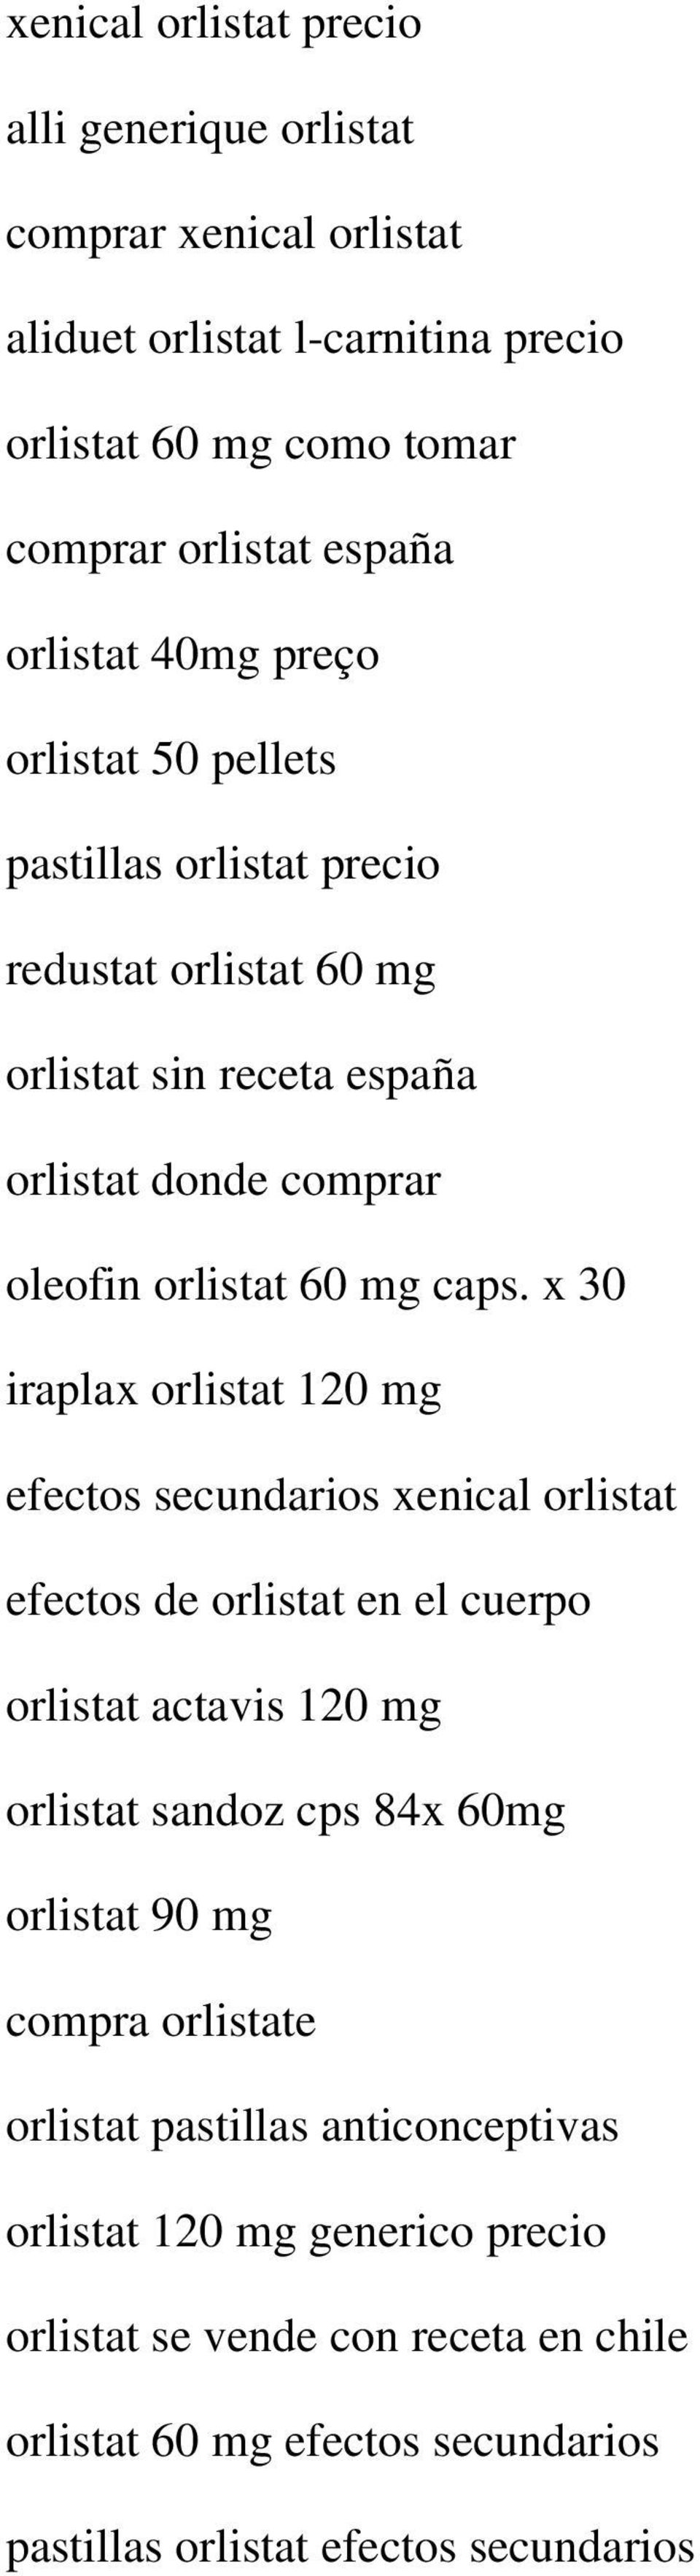 x 30 iraplax orlistat 120 mg efectos secundarios xenical orlistat efectos de orlistat en el cuerpo orlistat actavis 120 mg orlistat sandoz cps 84x 60mg orlistat 90 mg